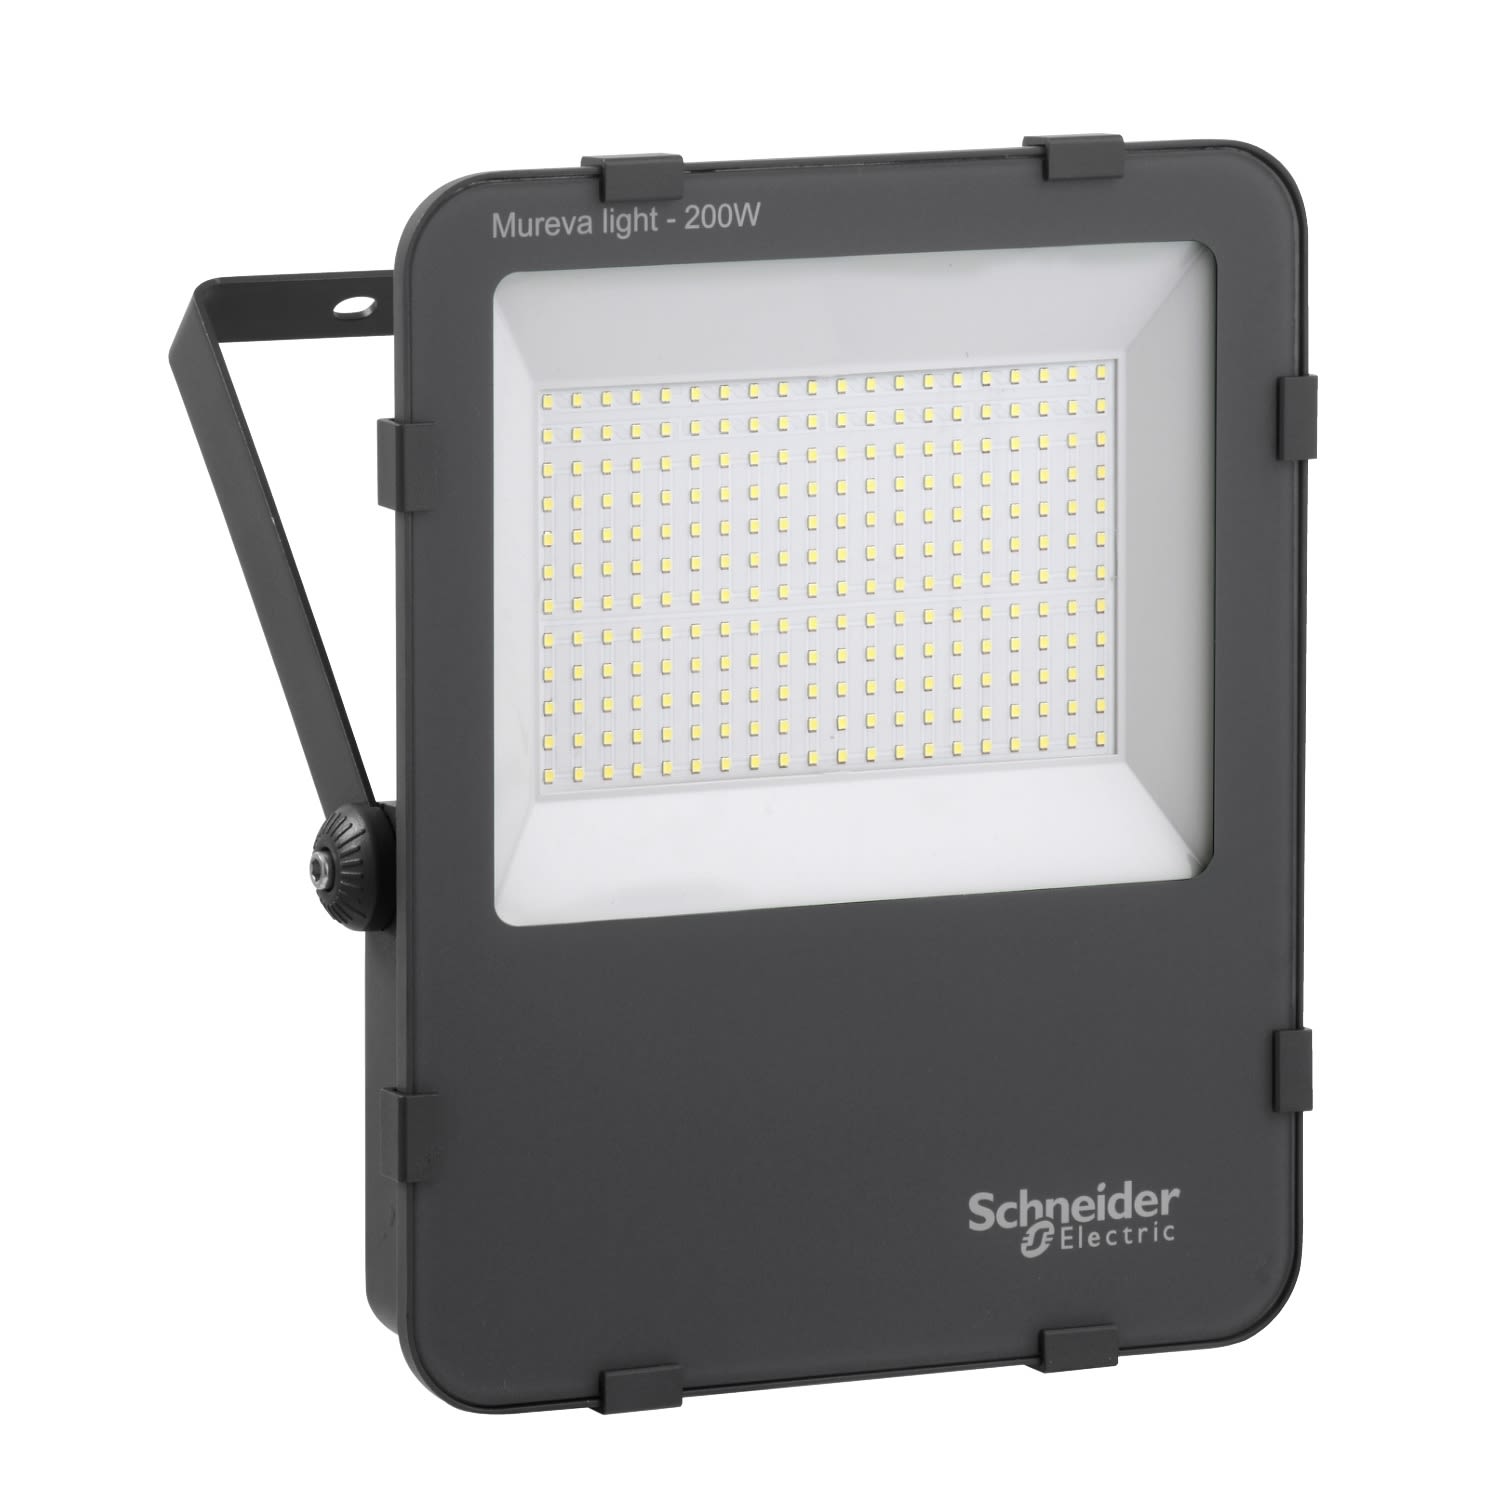 Schneider Electric Thorsman LED Baustrahler Flutlicht mit Sensor 230 V / 200 W